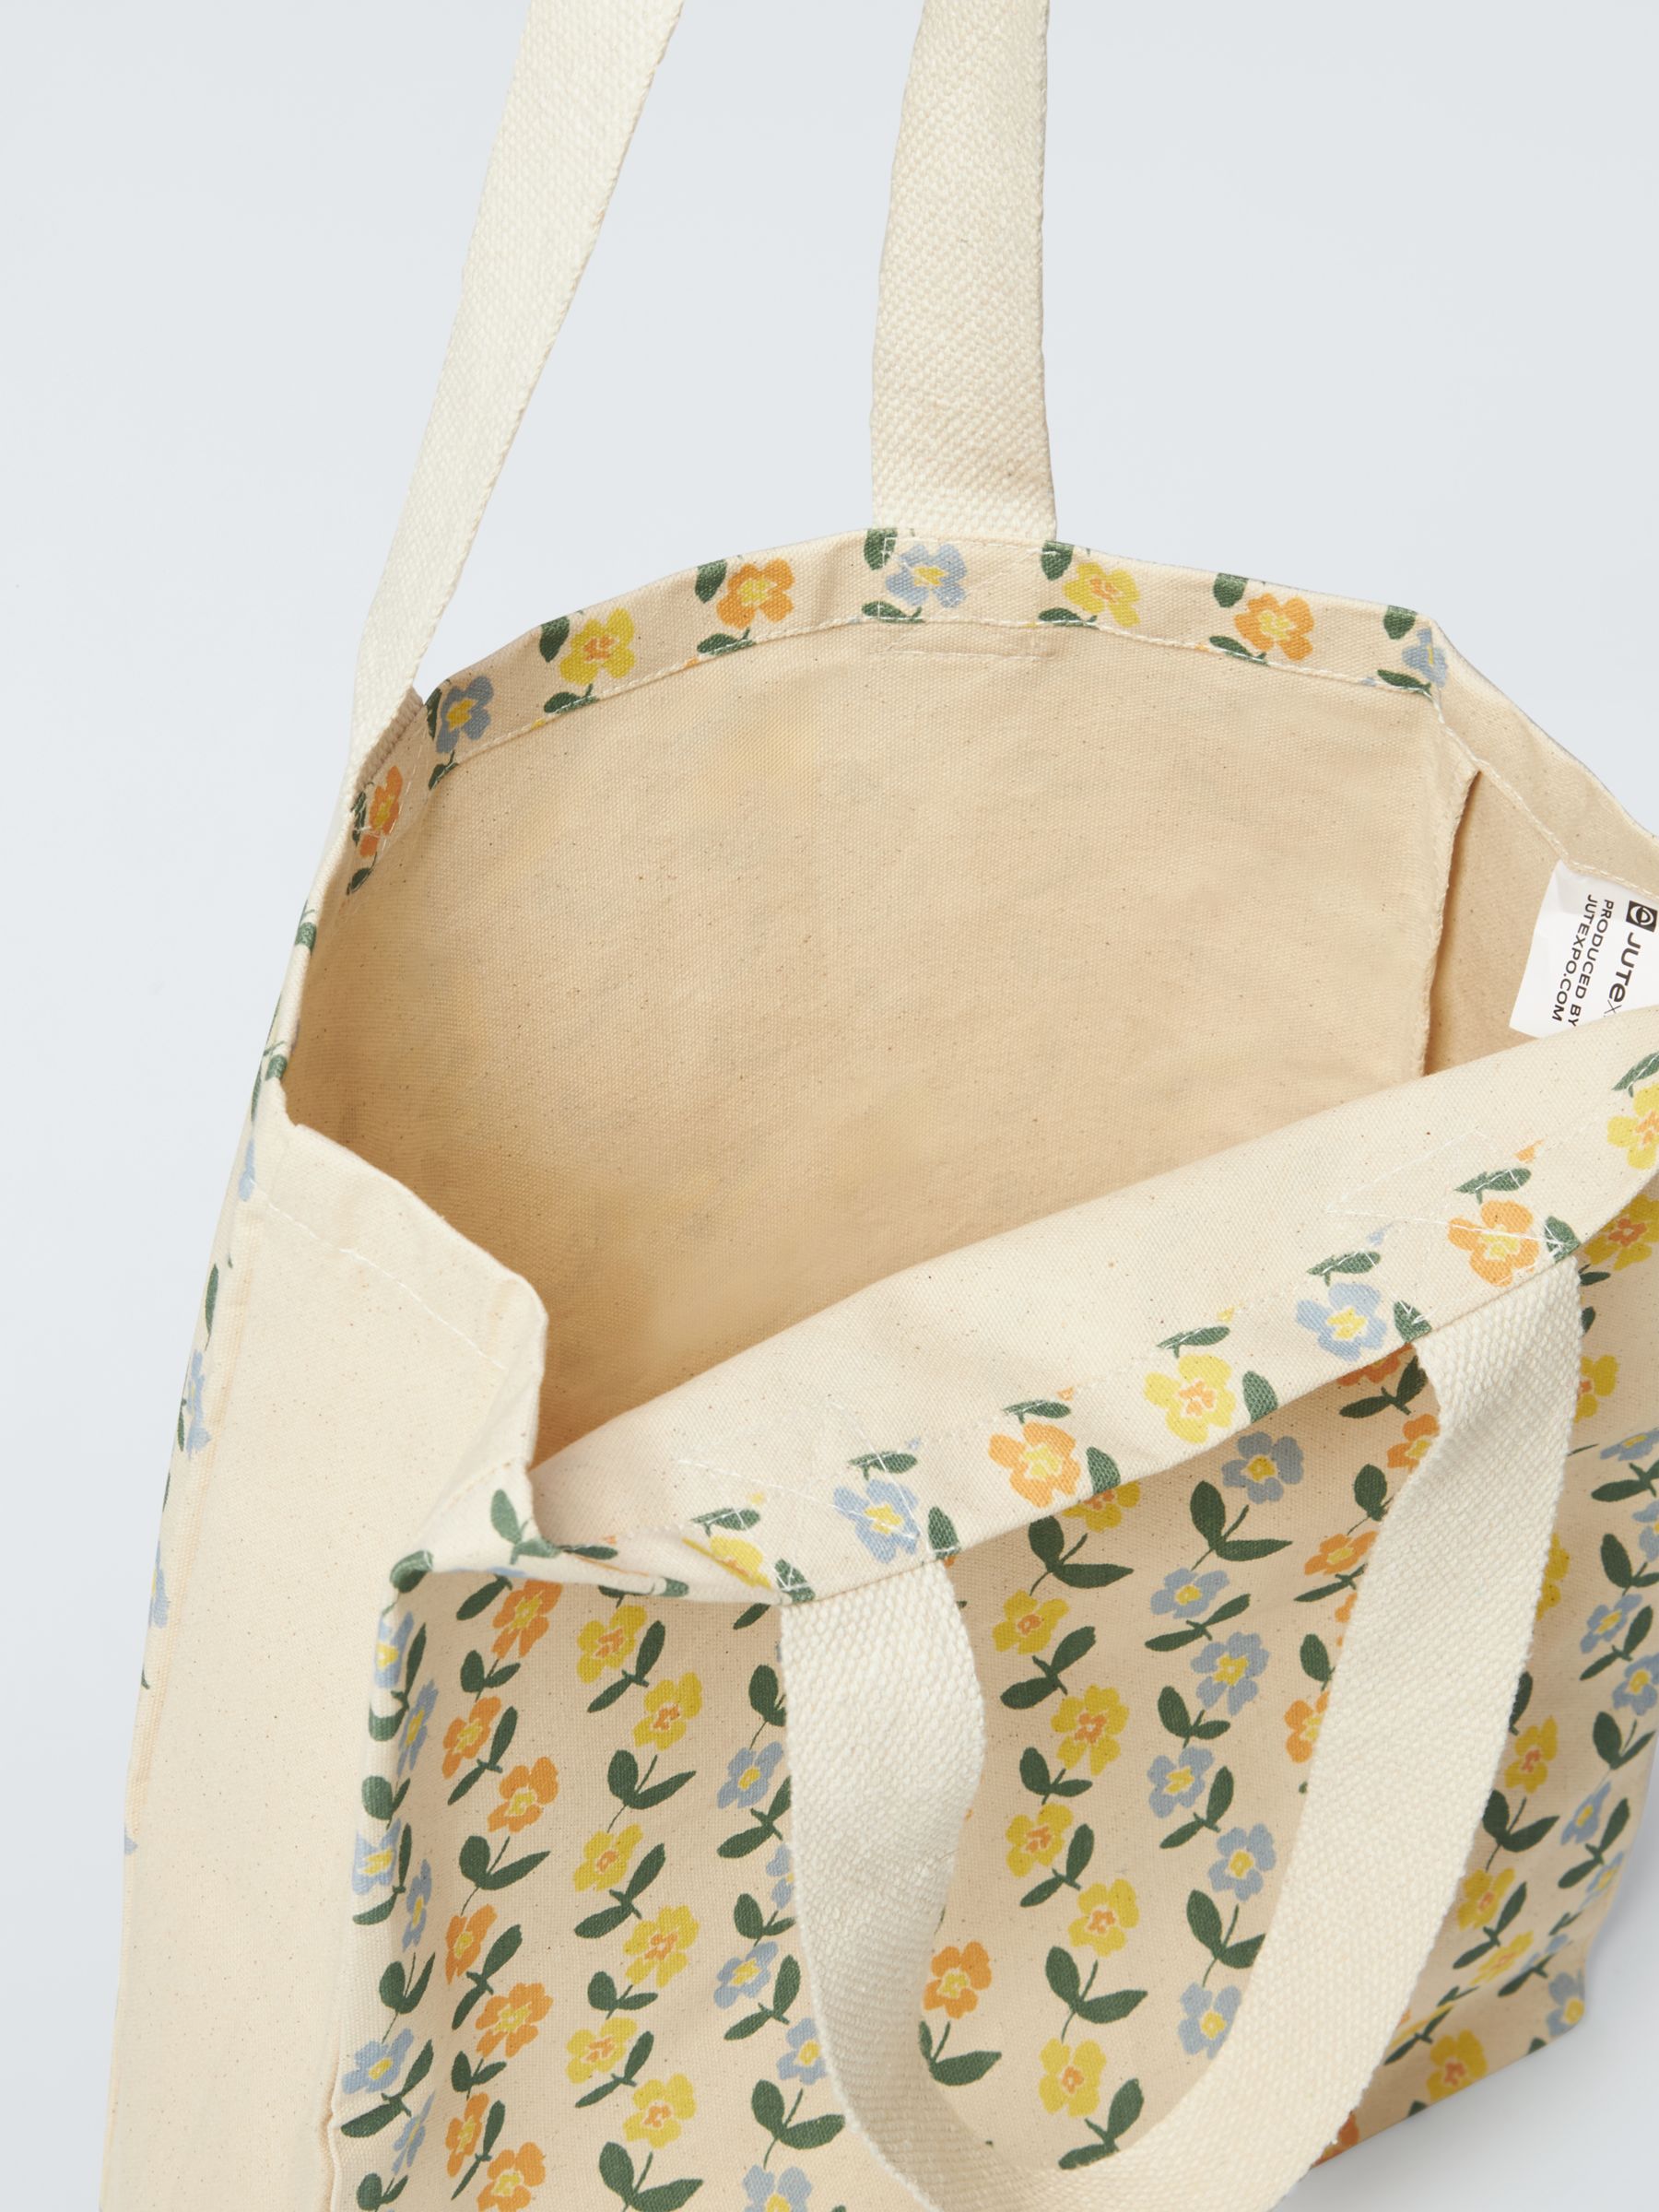 John Lewis Cotton Tote Bag, Spring Floral